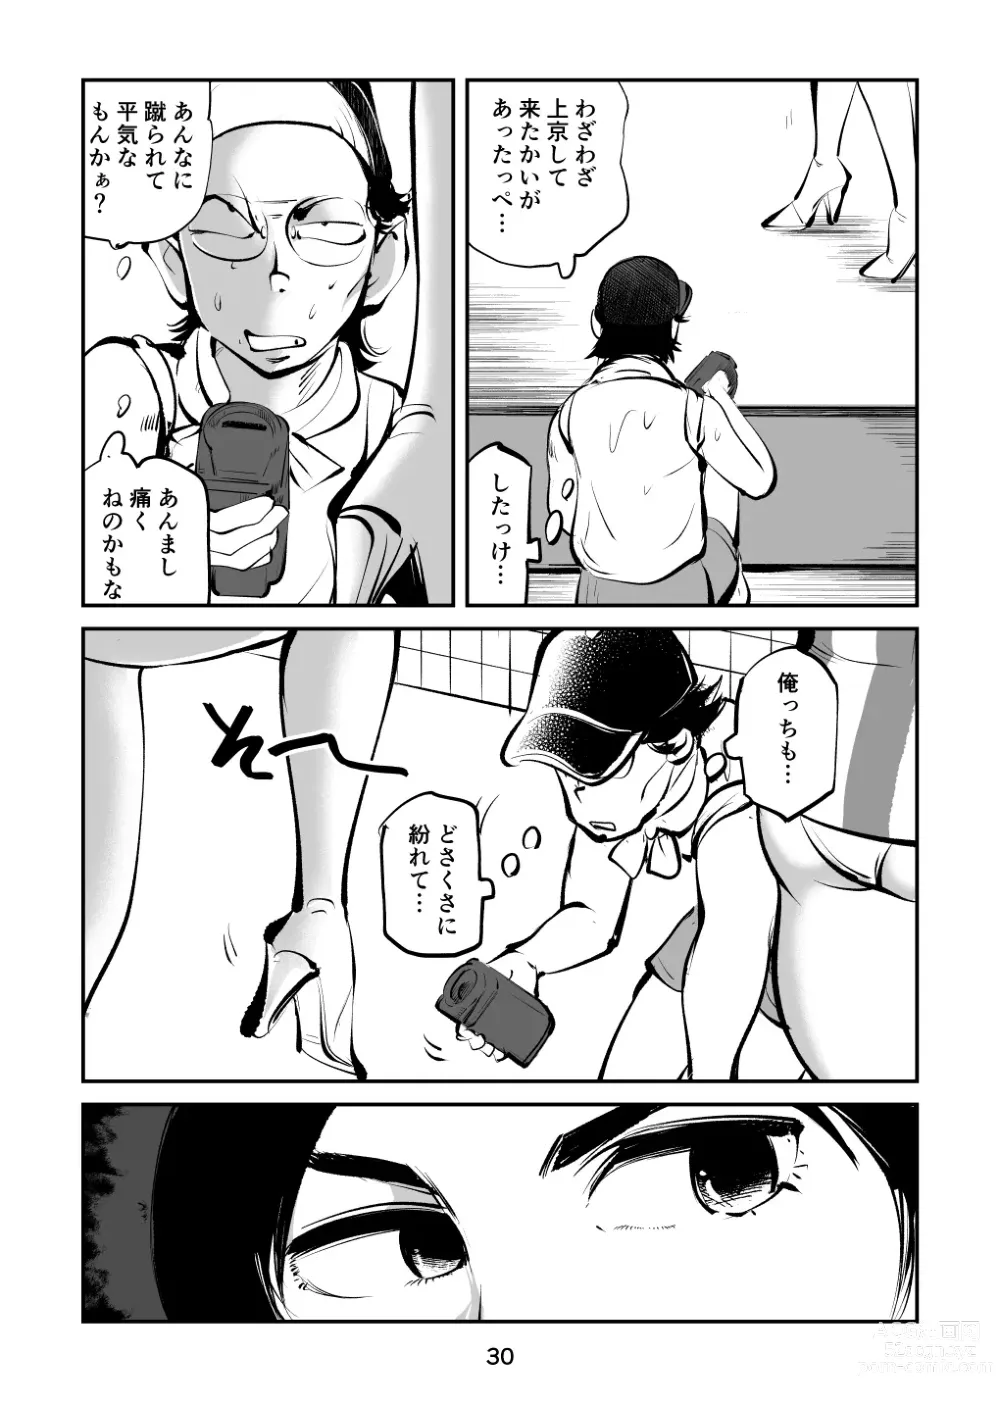 Page 30 of doujinshi Kinkeri Cheer Girl VS Tosatsuma Shakai Hito Cheer Girl-hen